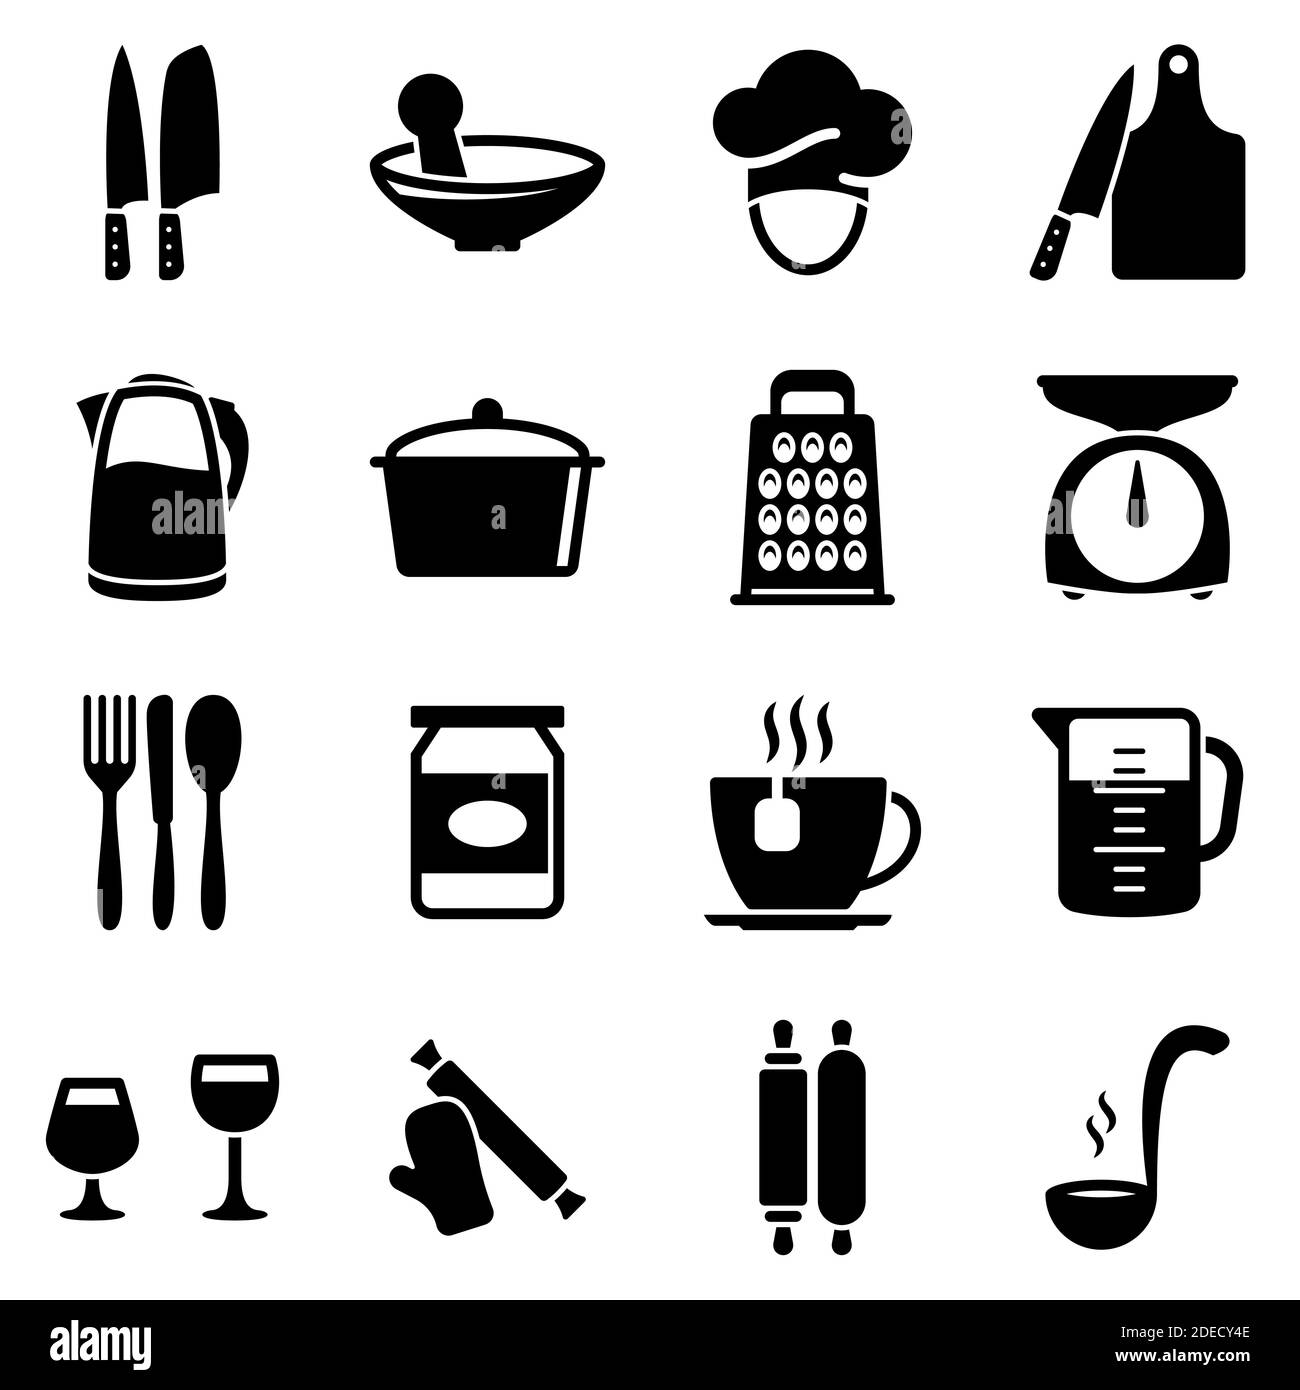 Satz von einfachen Symbolen auf einem Thema Küchenutensilien, Vektor, Design, Sammlung, flach, Zeichen, Symbol, Element, Objekt, Illustration. Schwarze Symbole isoliert ag Stock Vektor